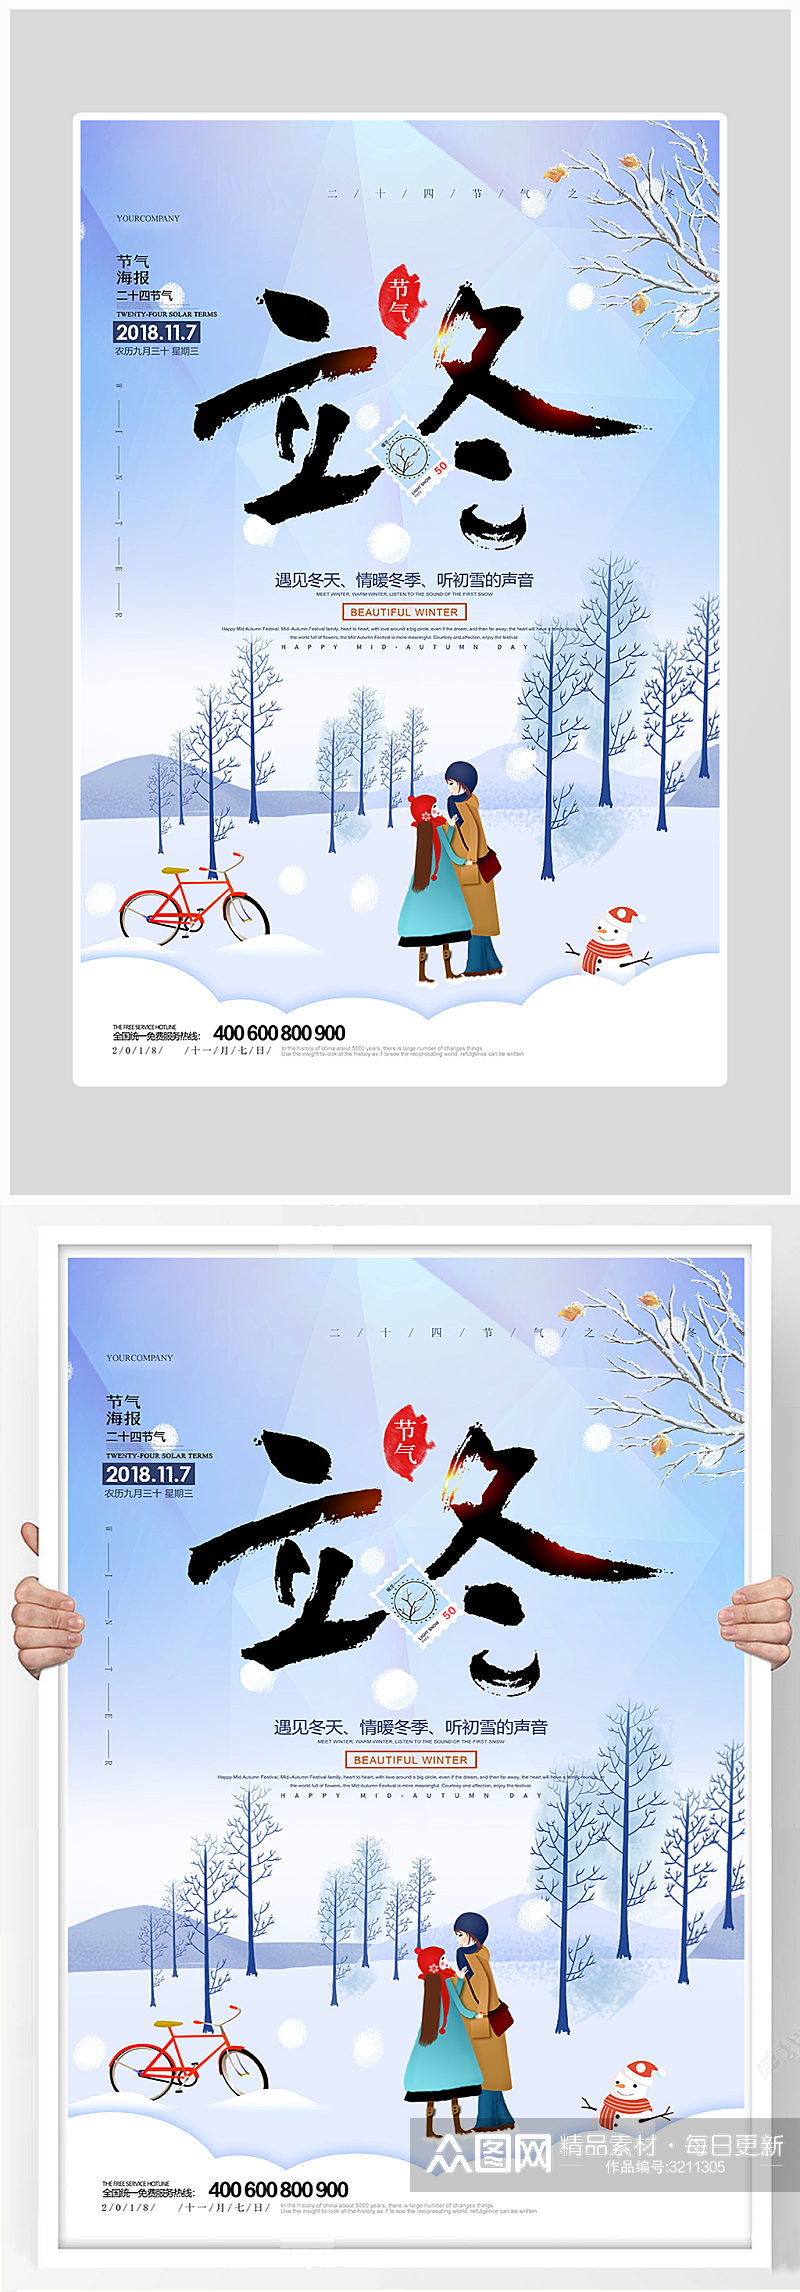 创意大气立冬节气雪景海报设计素材